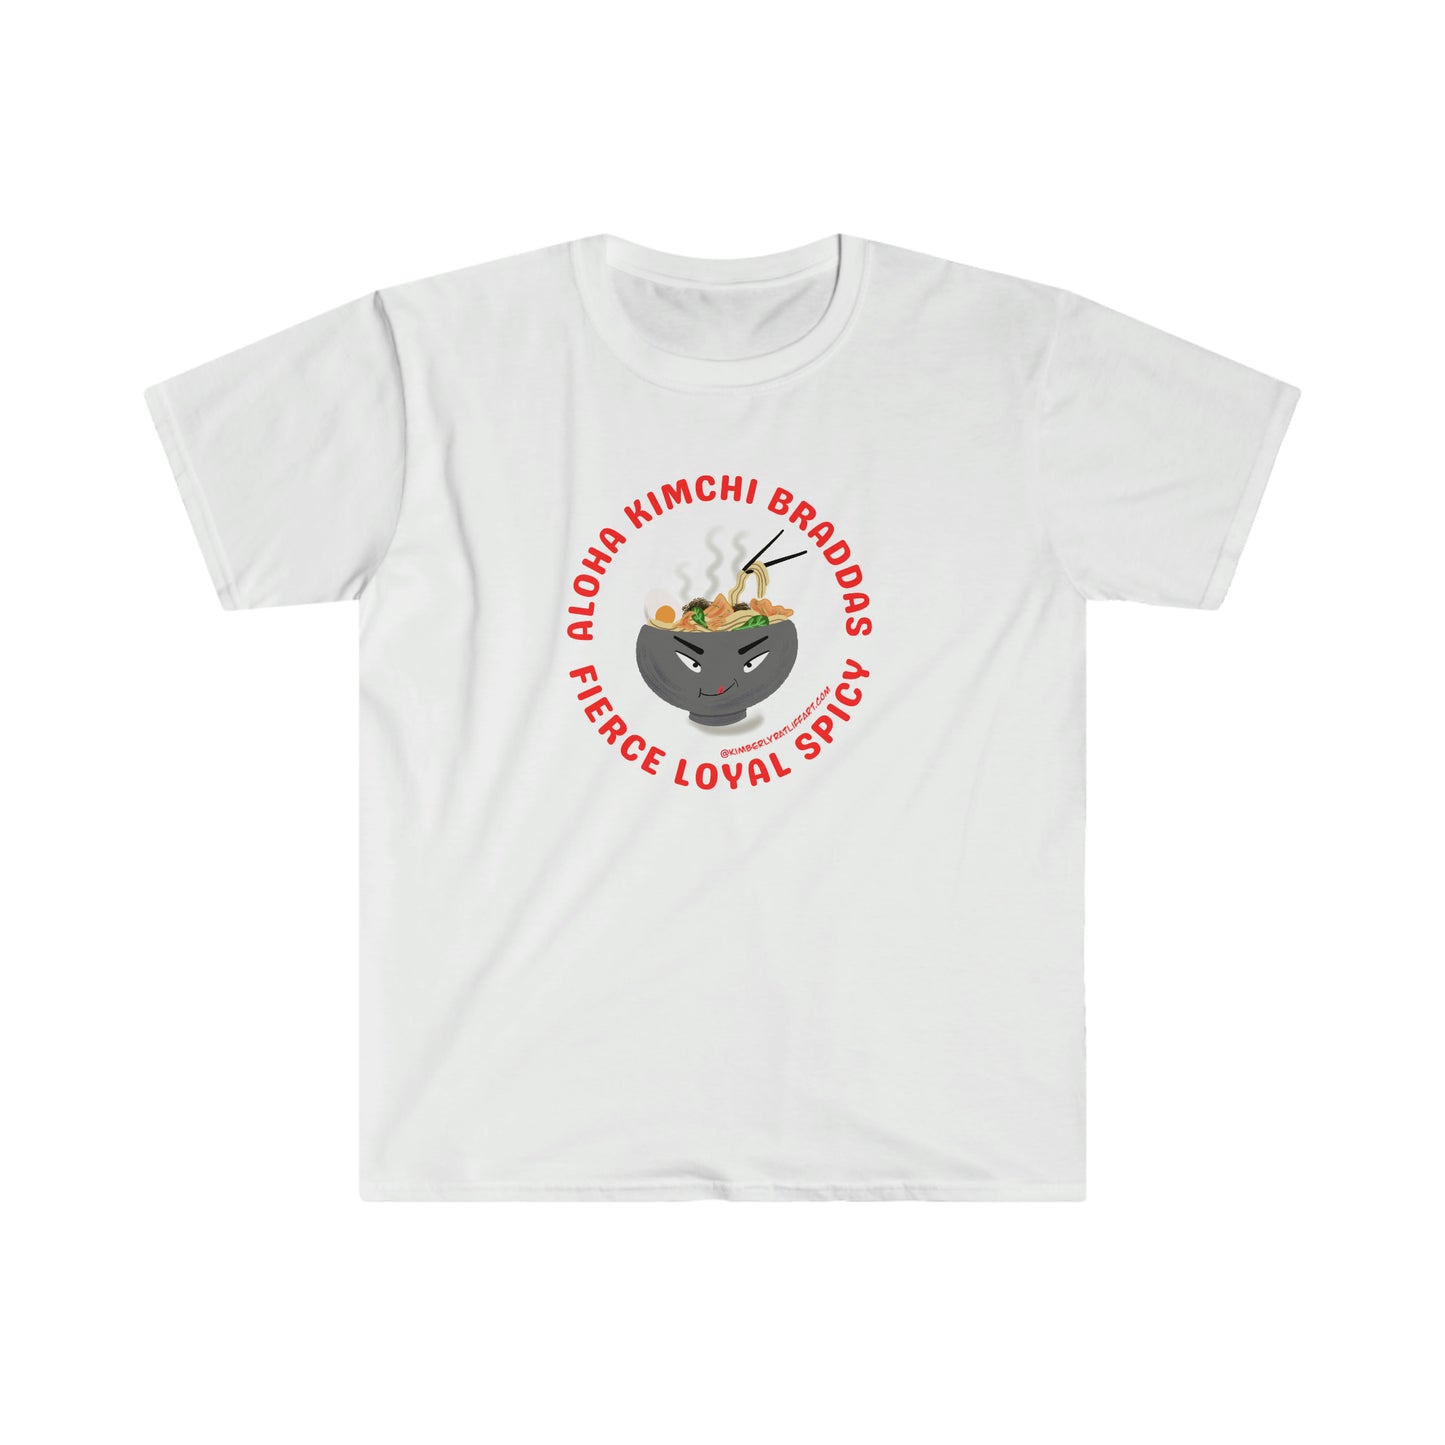 Aloha Kimchi Braddahs T-shirt